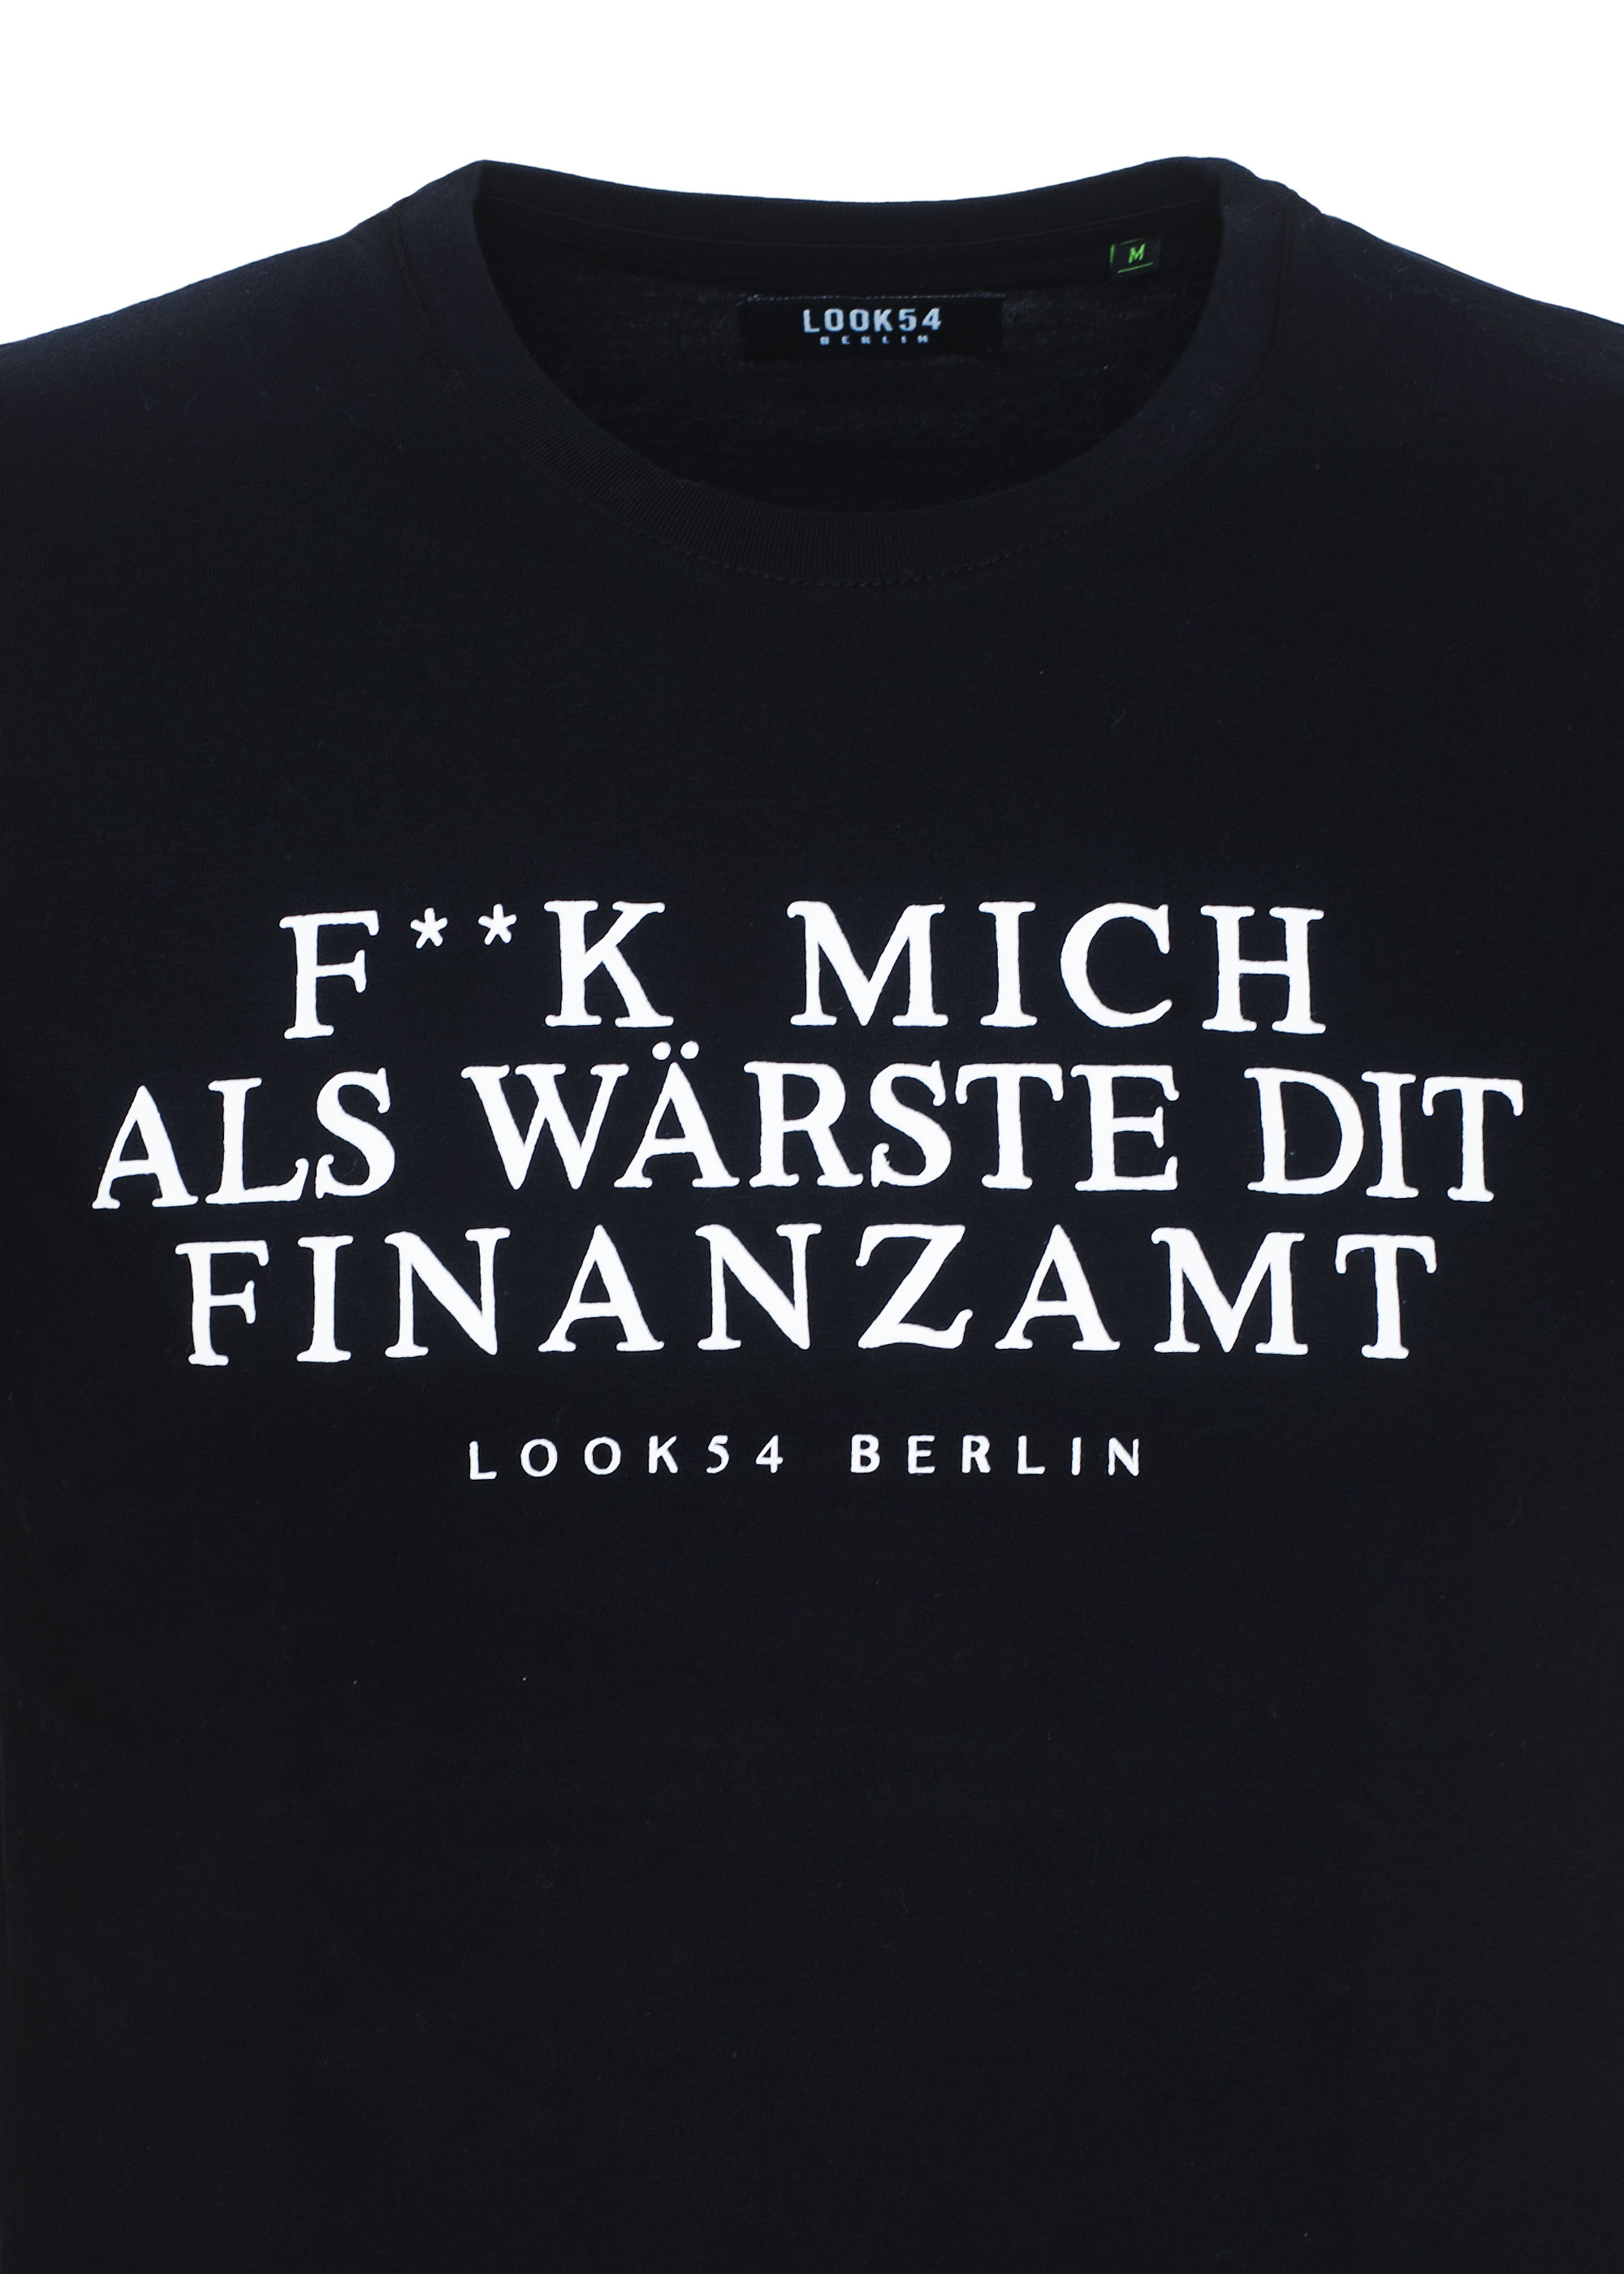 F**k mich Finanzamt - T-Shirt